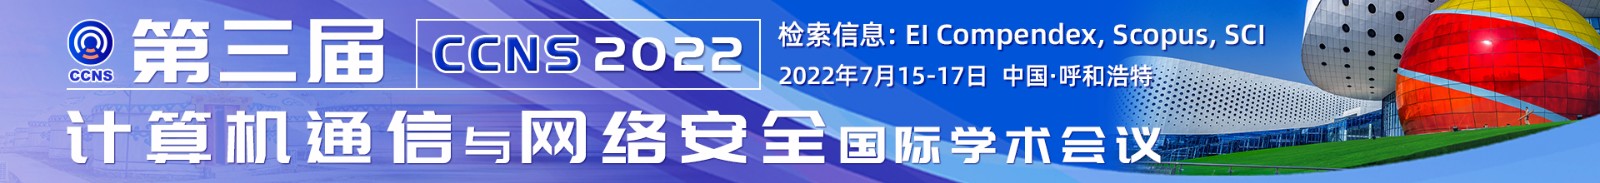 6月昆明-CCNS-2022-学术会议云PC端1920x220-陈军-20220128-.jpg